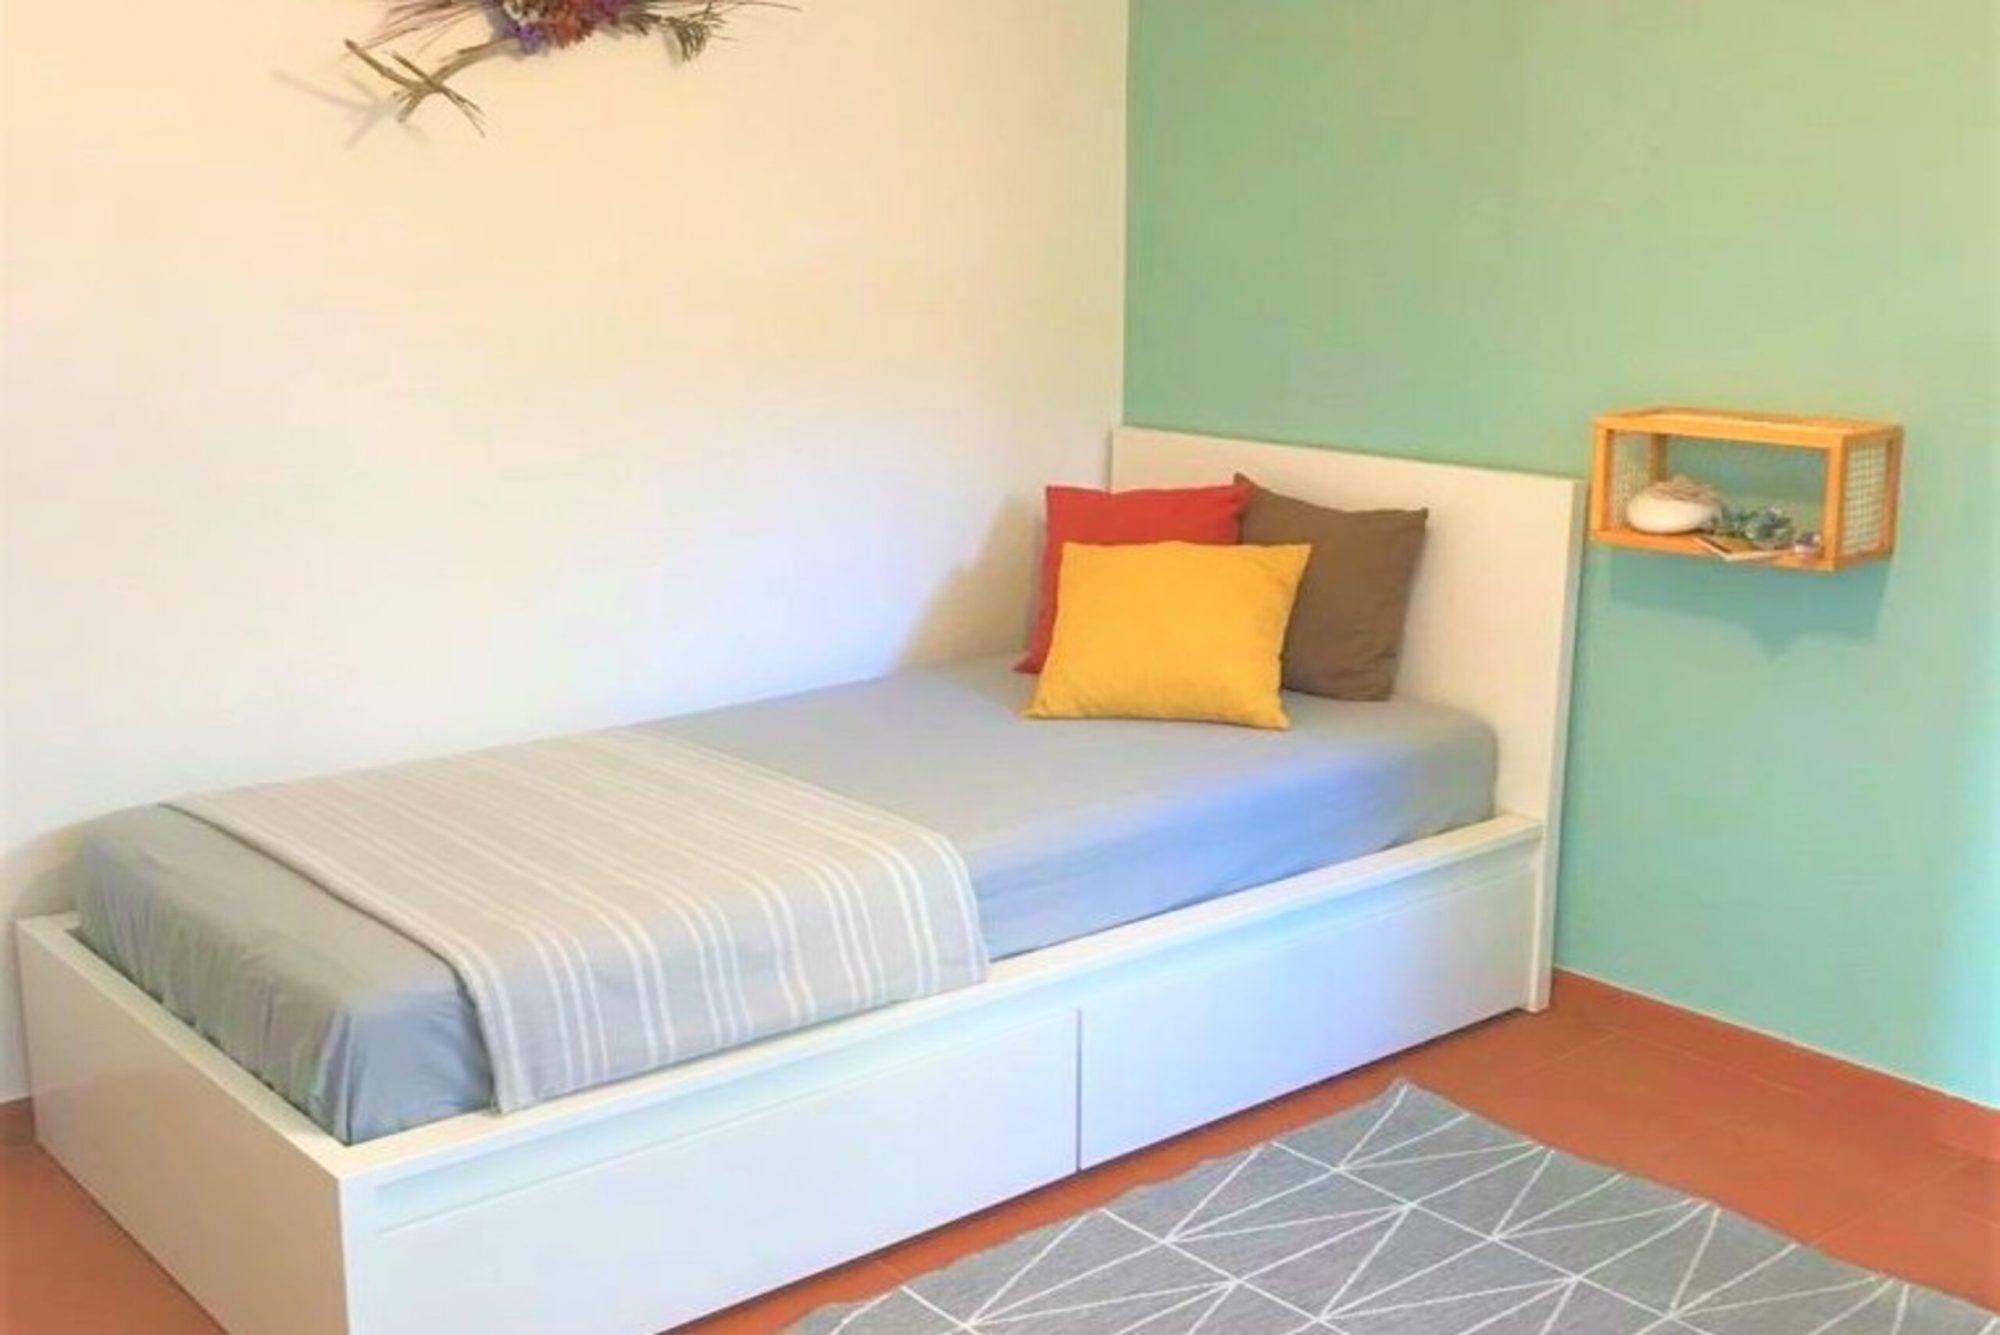 Rent Room Lisbon – Parede 31# – Bedroom